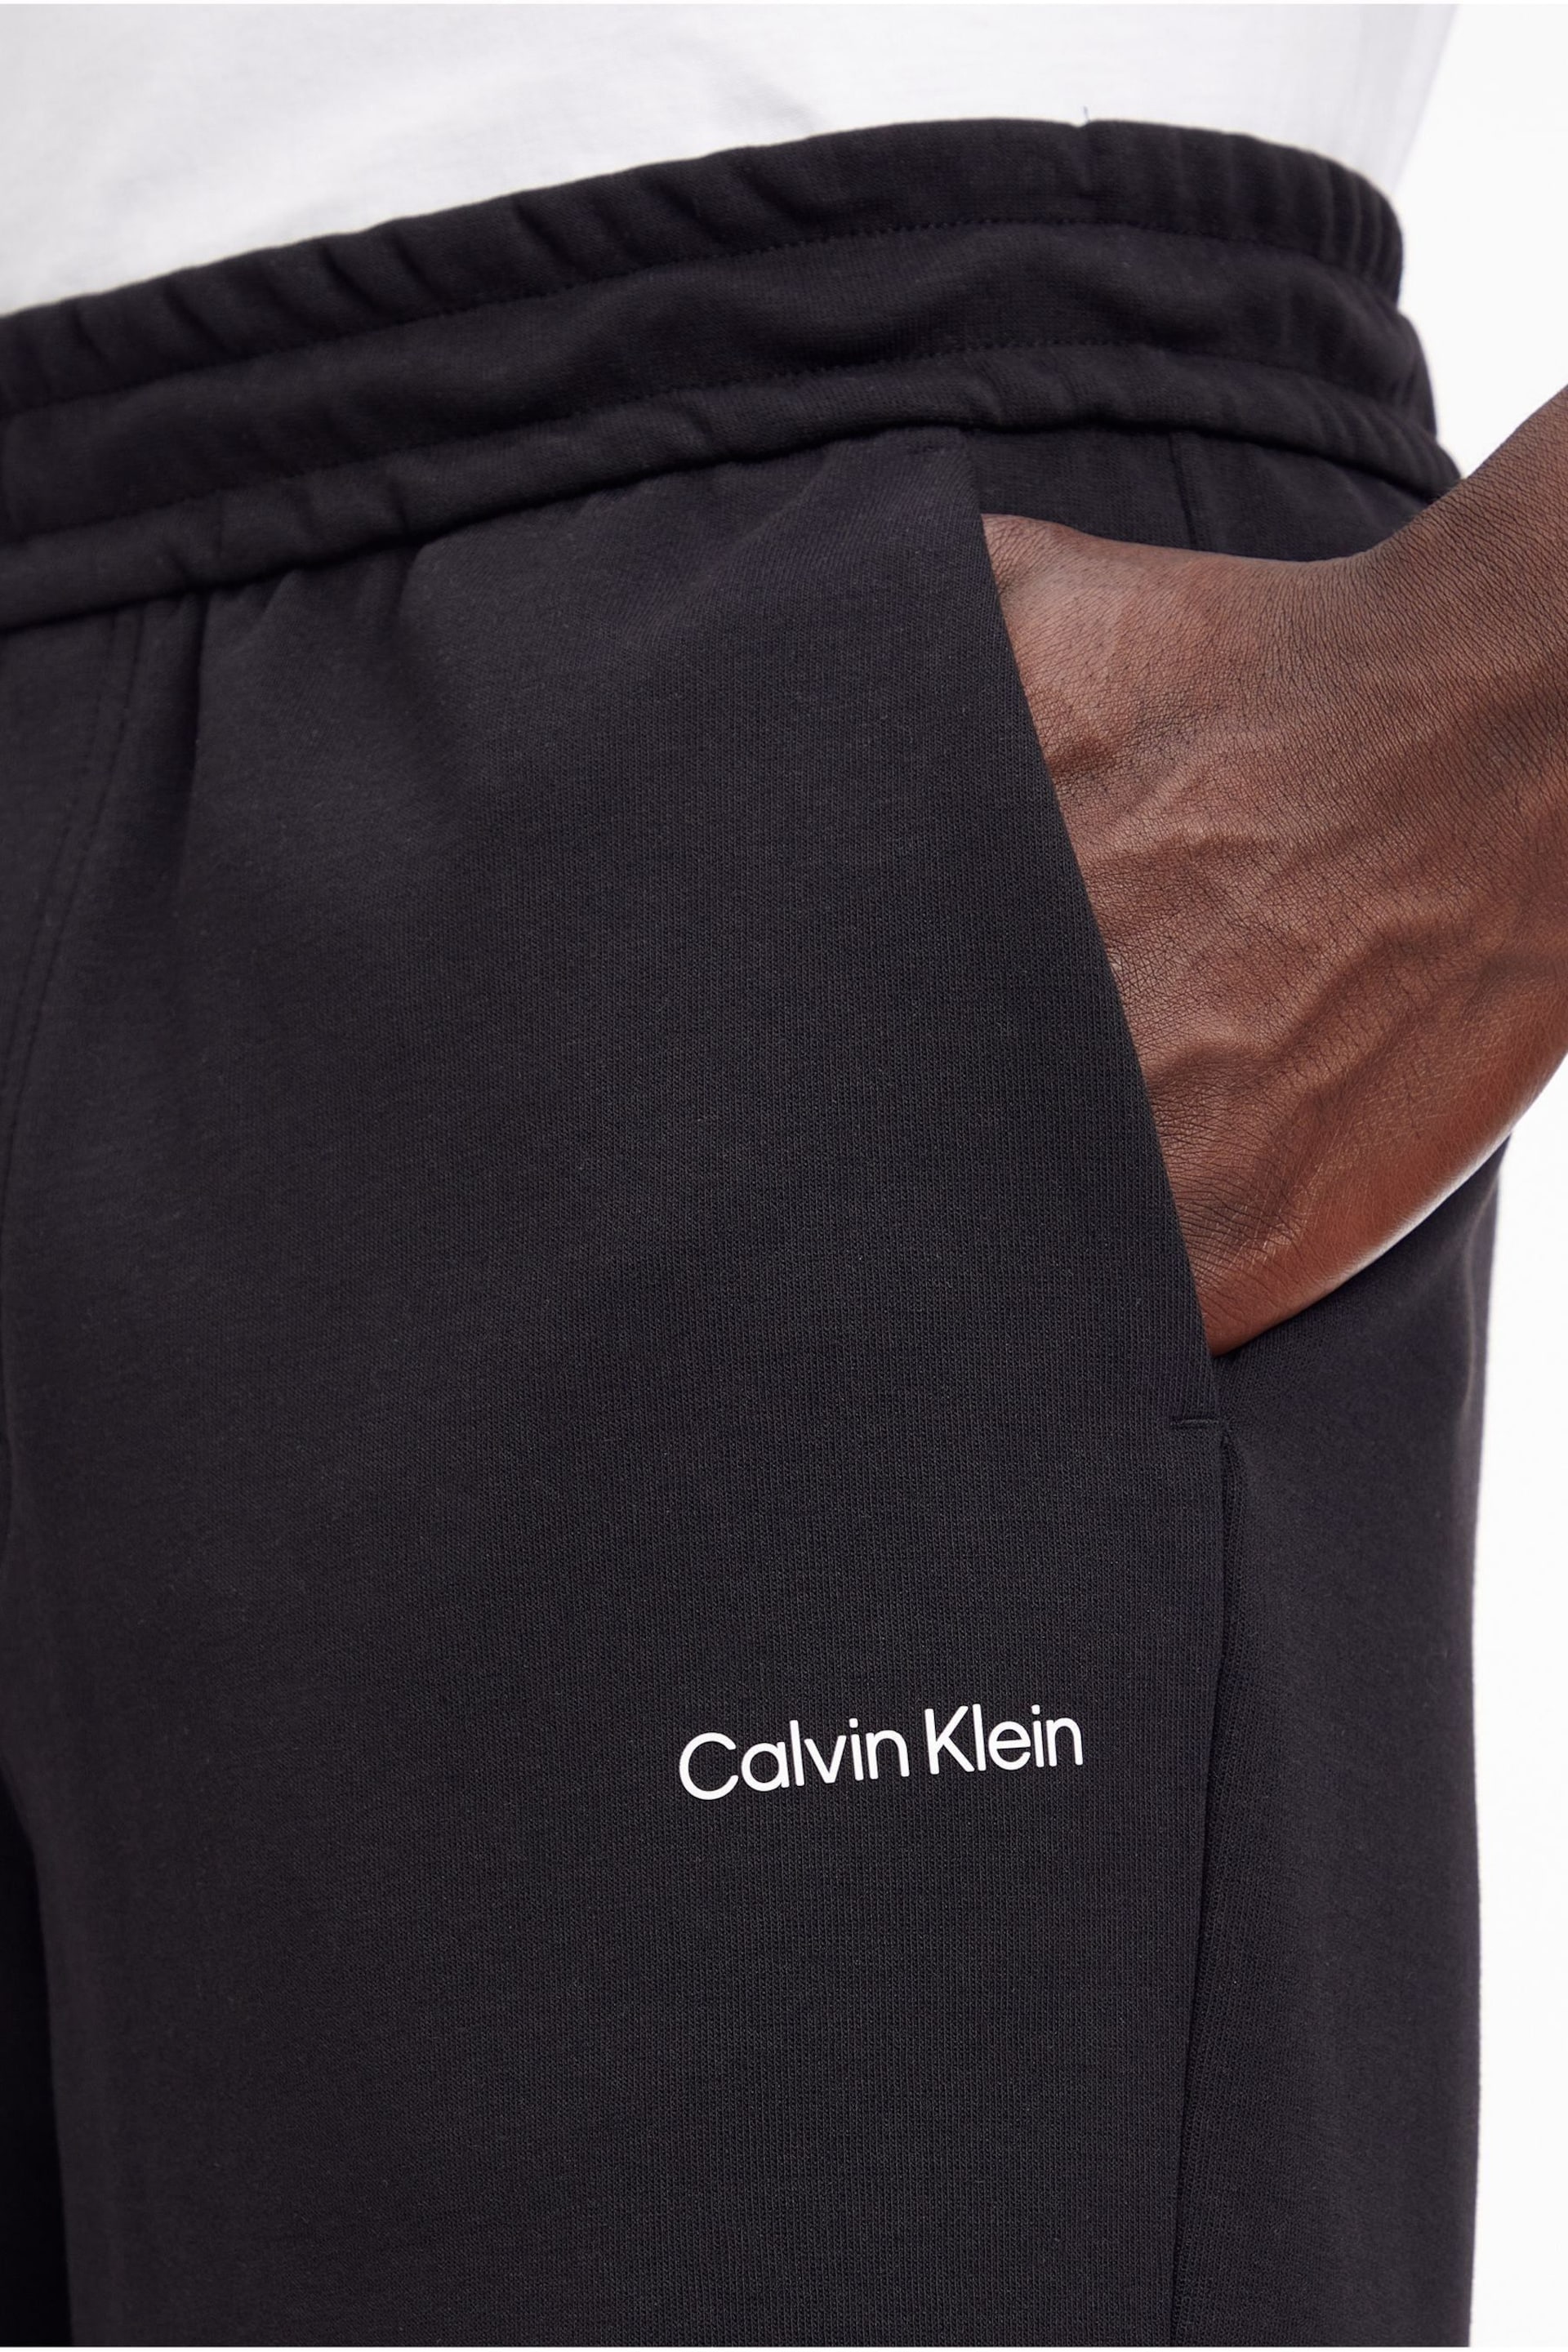 Calvin Klein Black Logo Shorts - Image 3 of 5